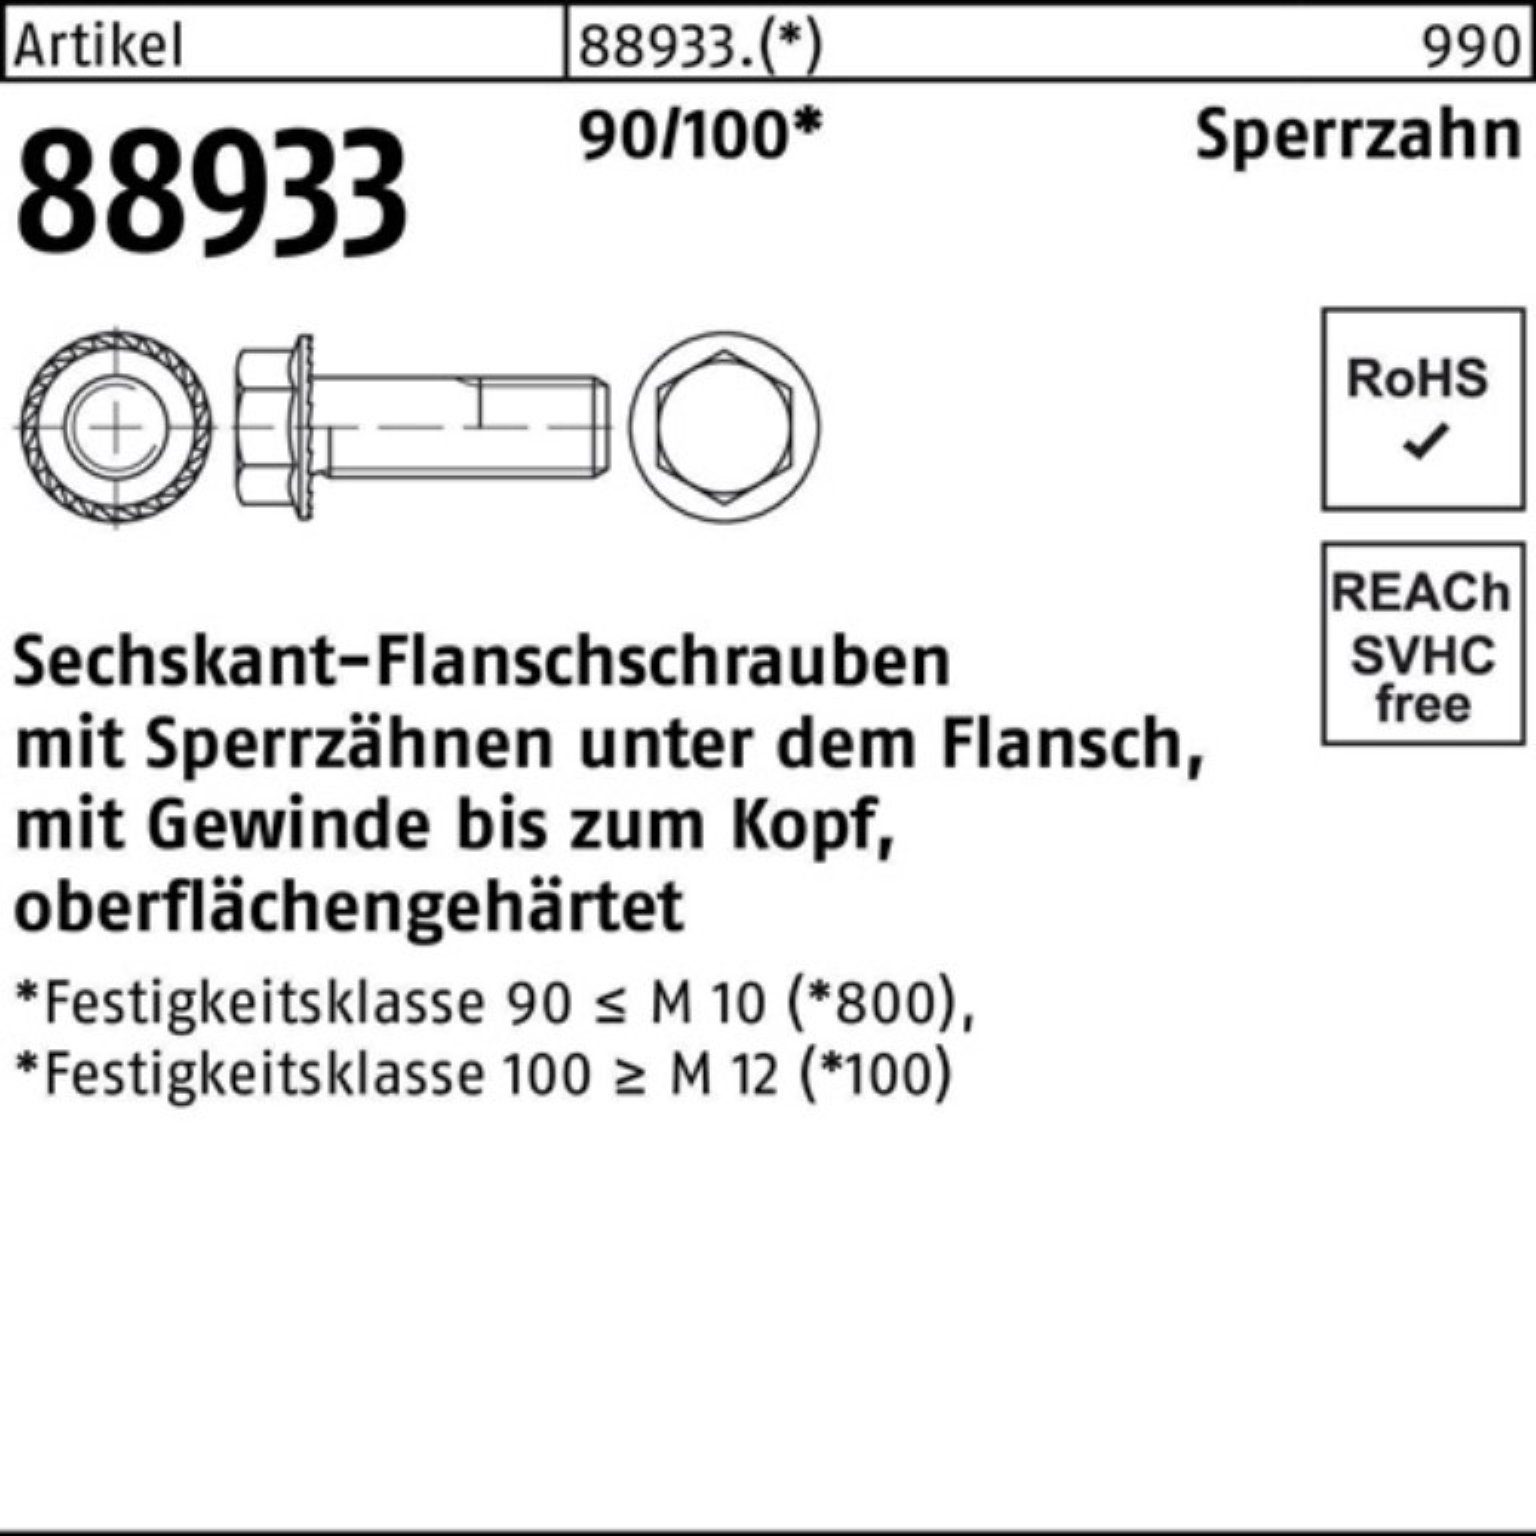 200er Sechskantflanschschraube Schraube 88933 90/100 R Reyher 20 VG Pack 2 M8x Sperrz.